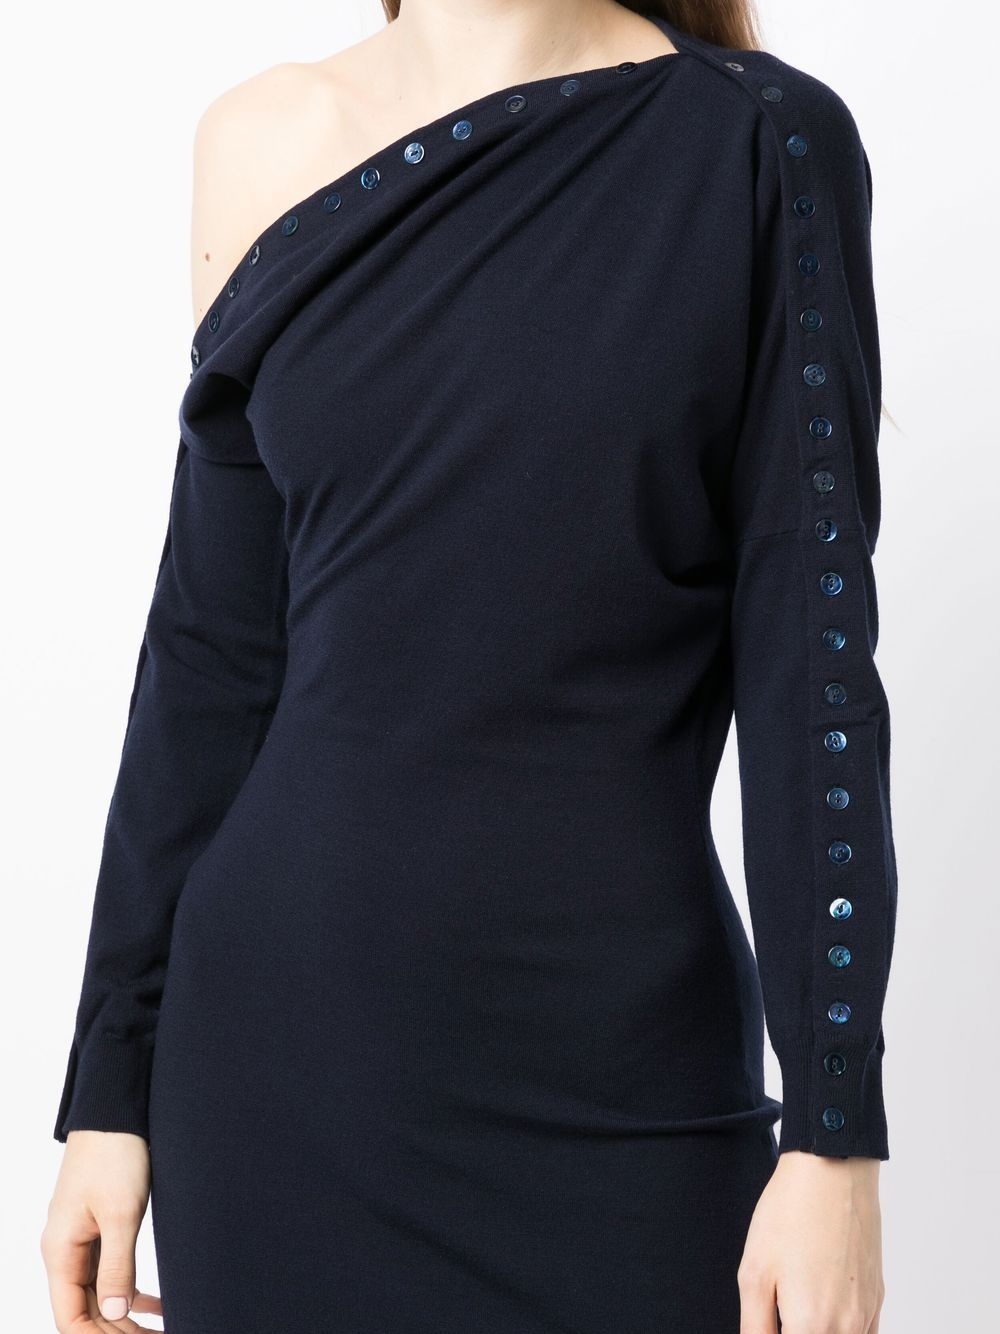 sequin-embellished cold-shoulder dress - 5